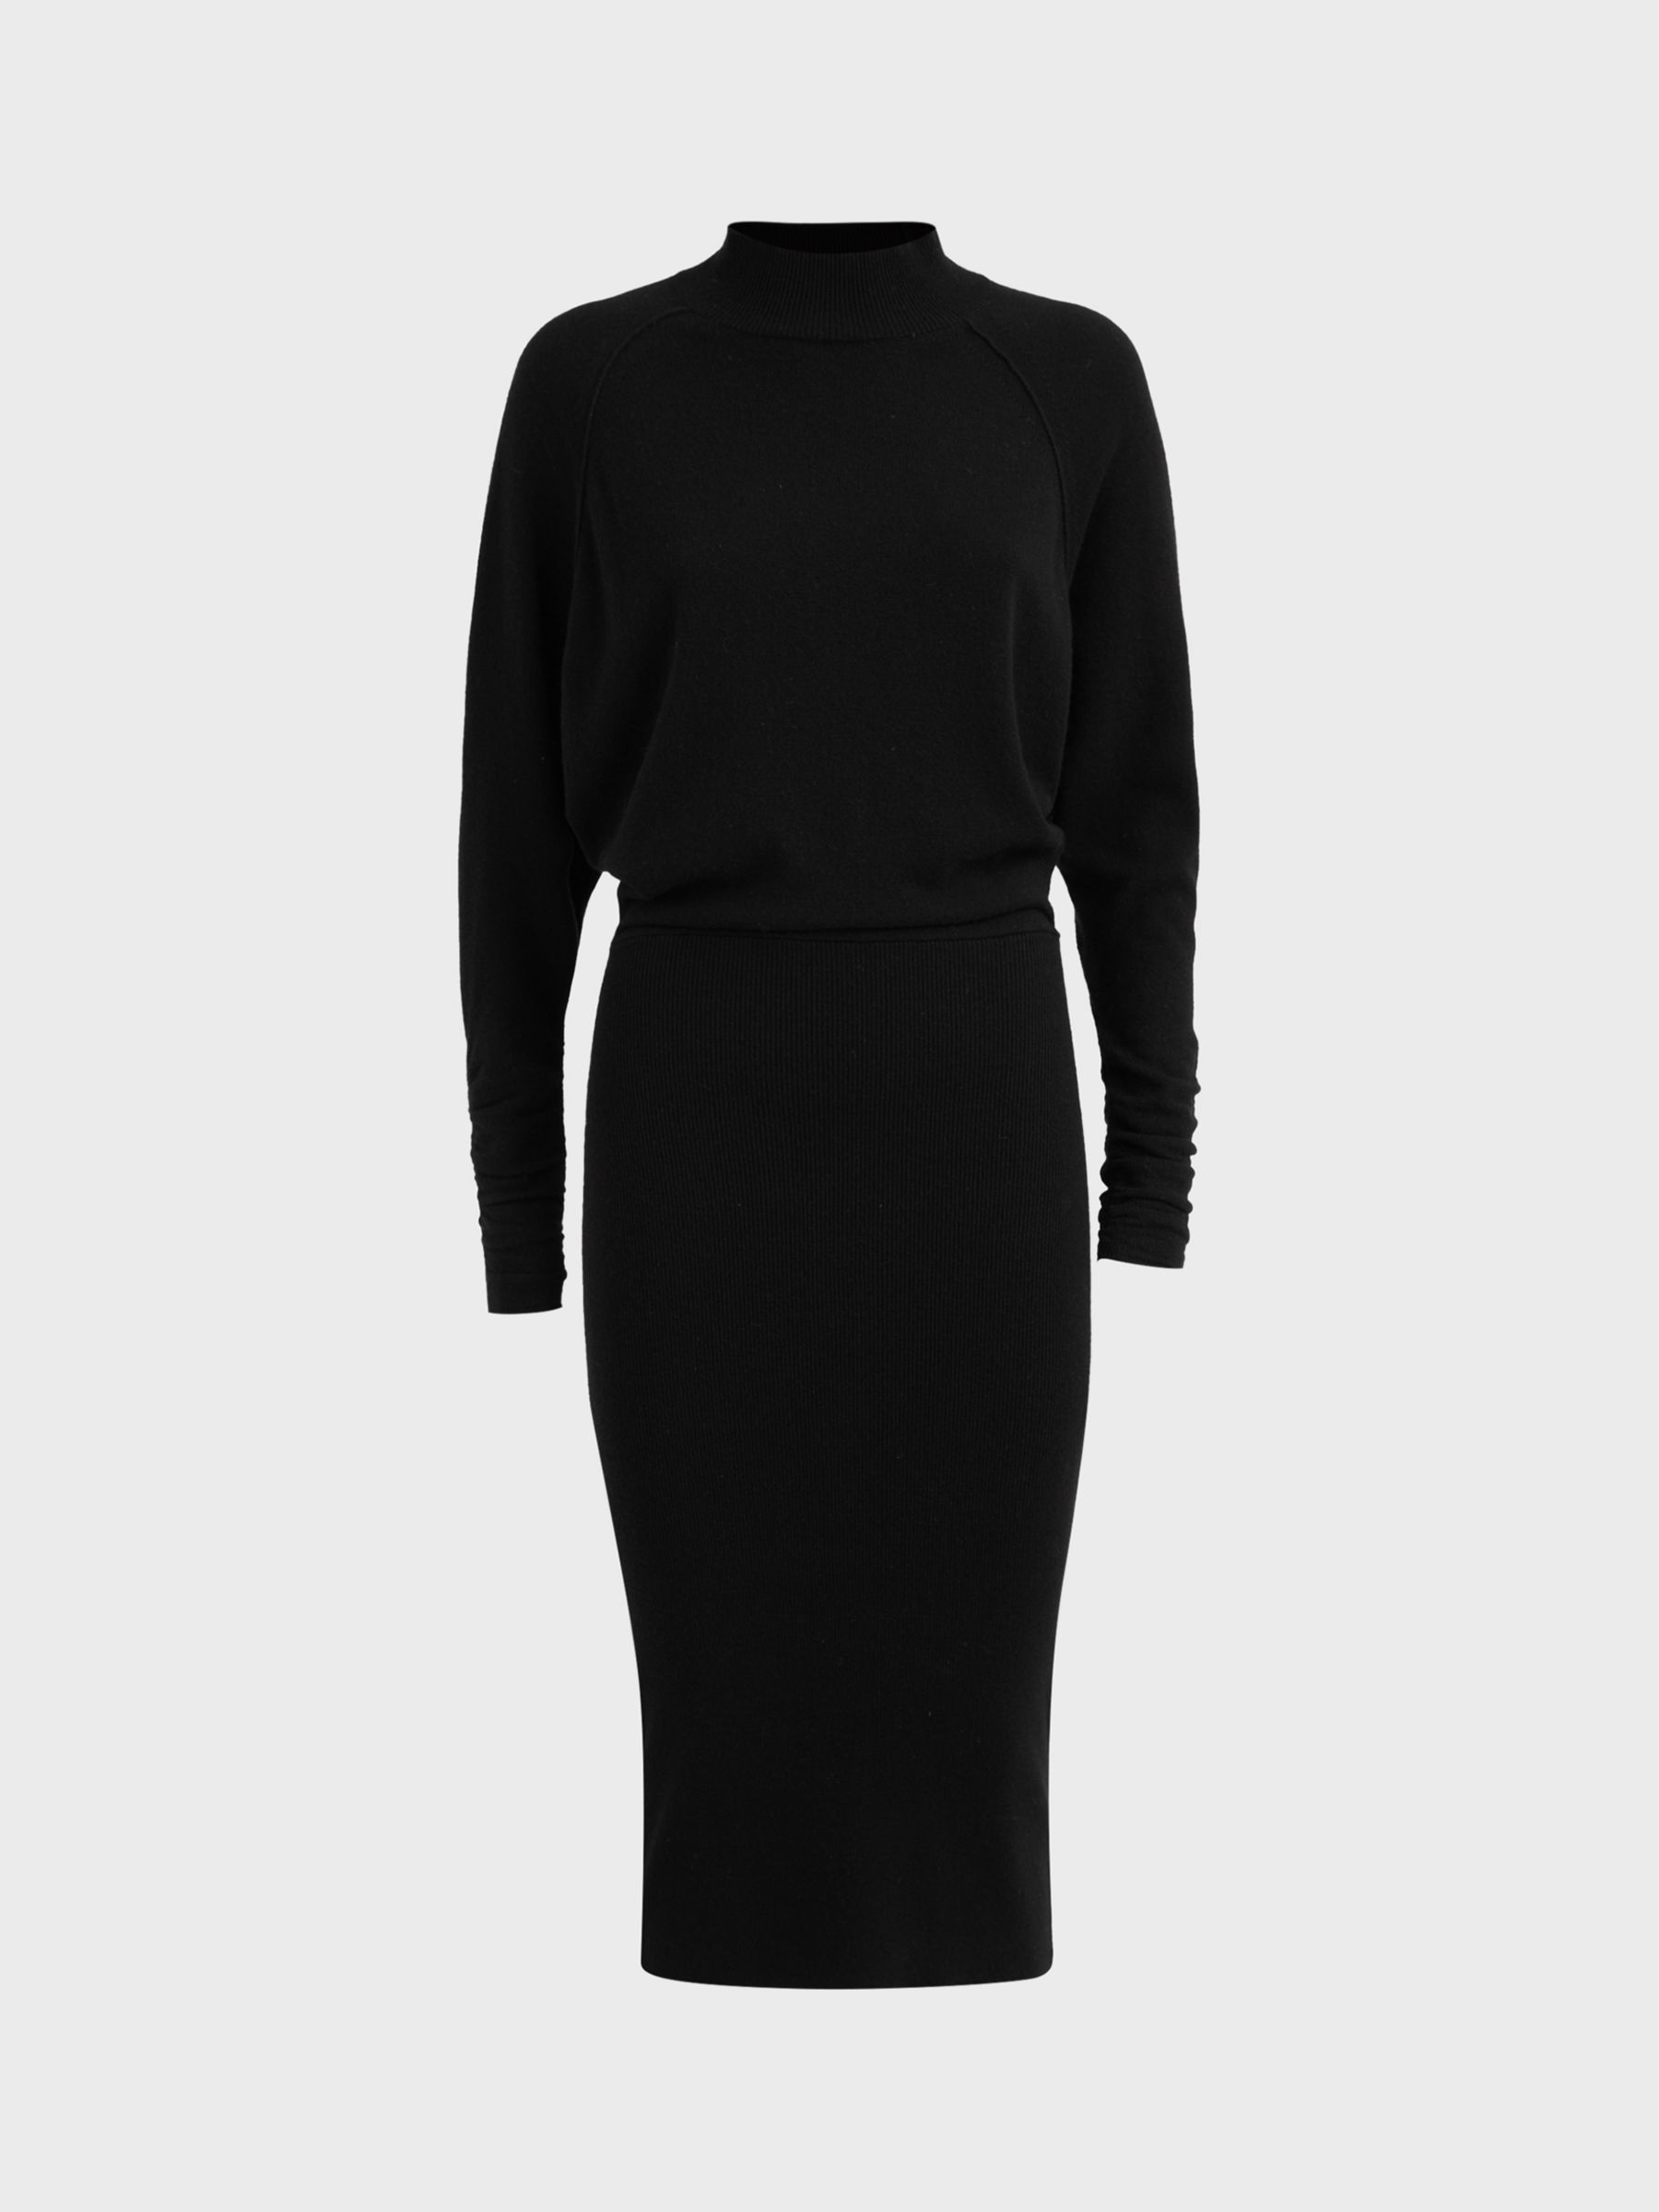 Reiss Freya Knitted High Neck Dress, Black, XS